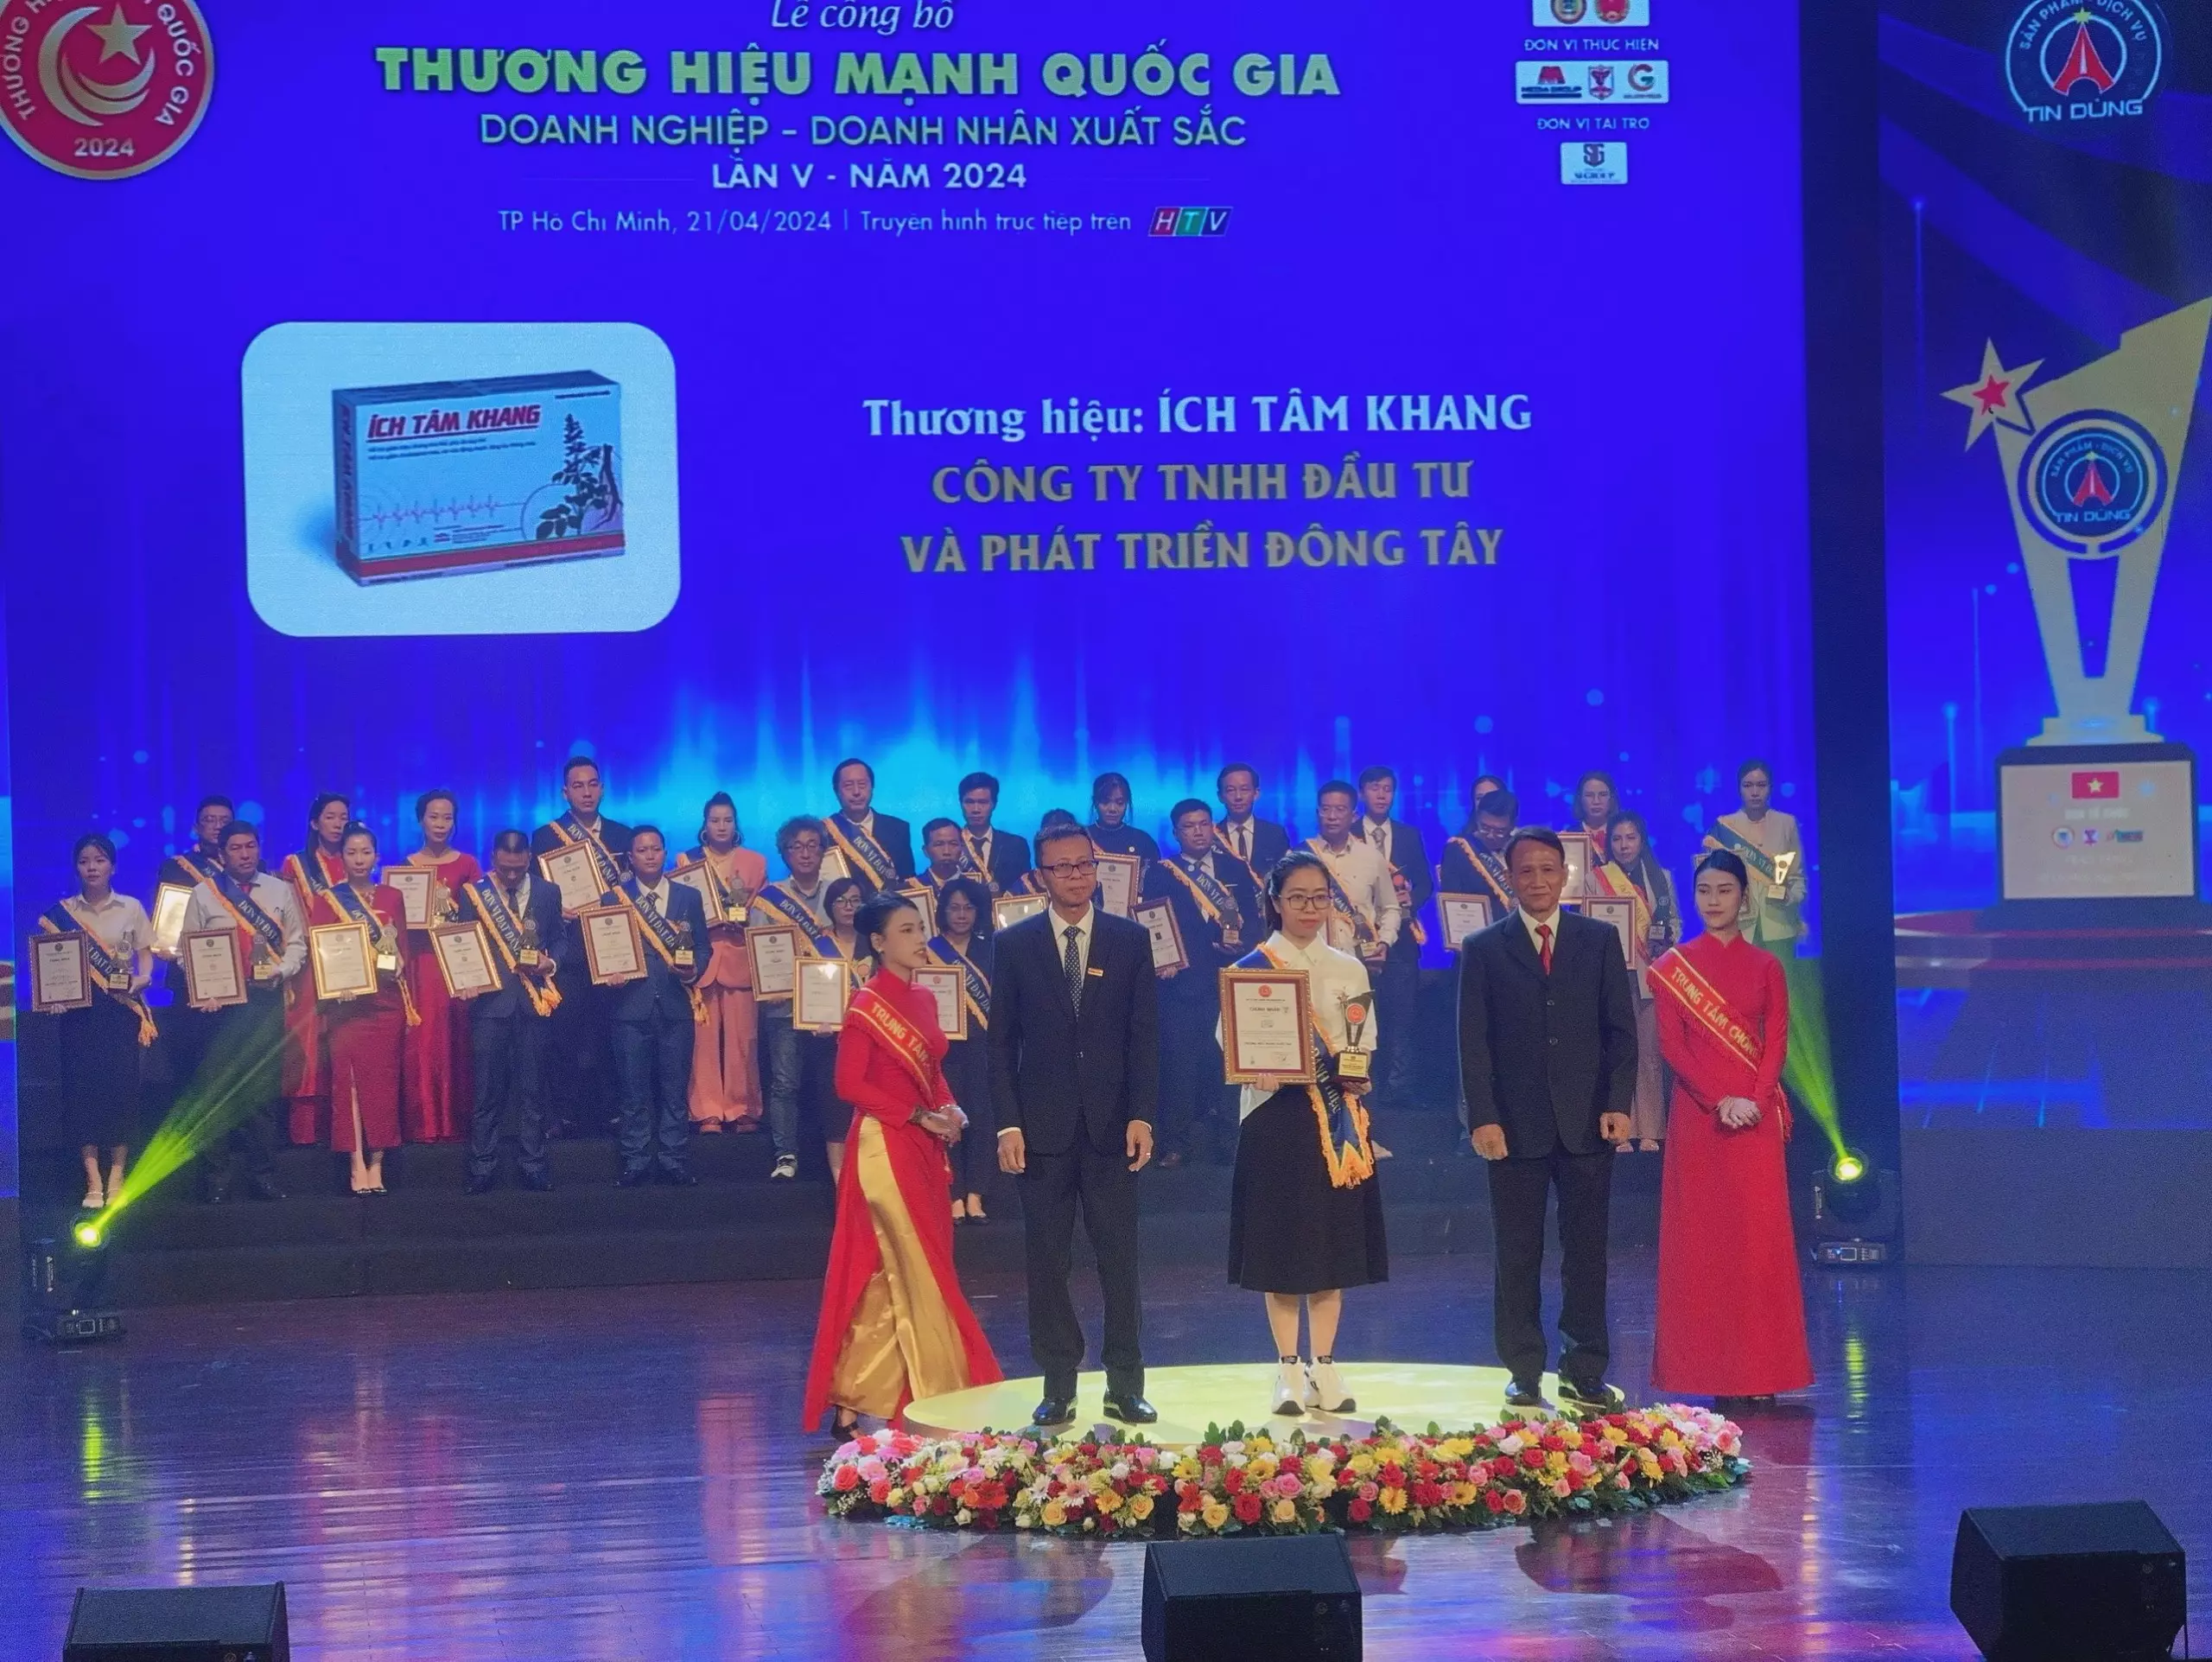 Ích Tâm Khang nhận giải thưởng Thương hiệu mạnh Quốc Gia 2024